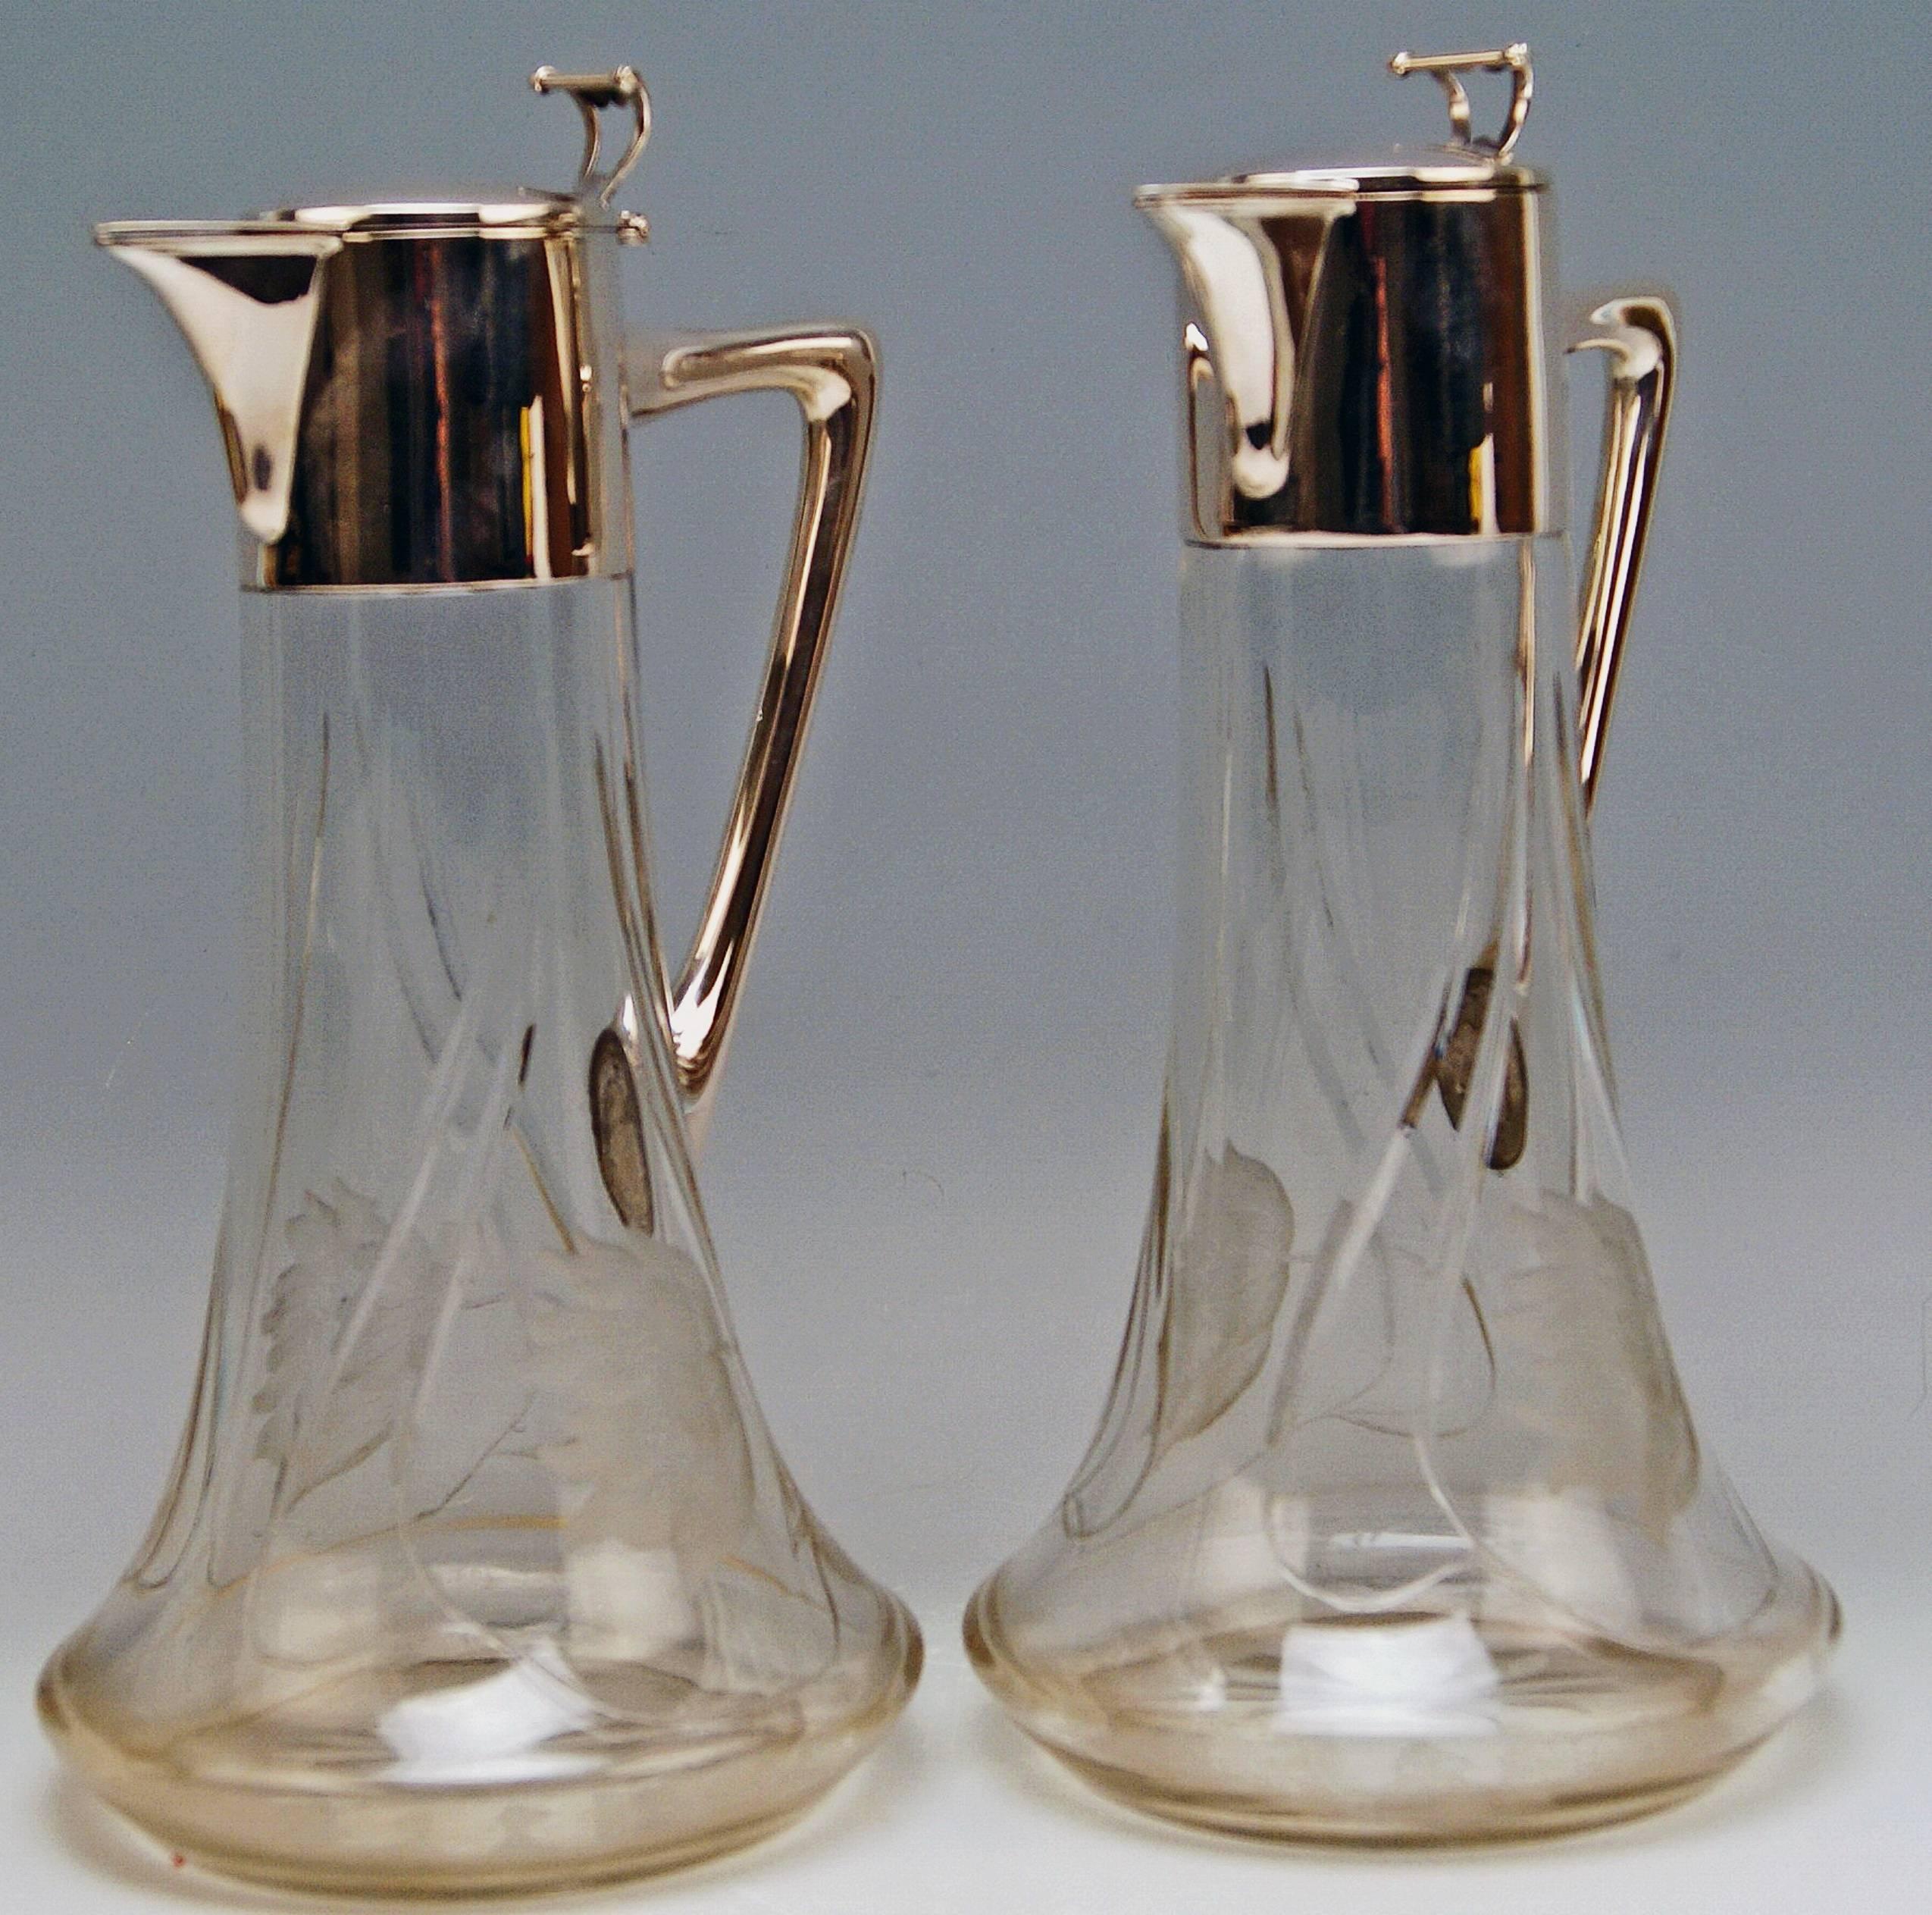  Silver 800 Two Jugs Decanters Glass Art Nouveau Alexander Birkl Vienna, 1900 (Art nouveau)